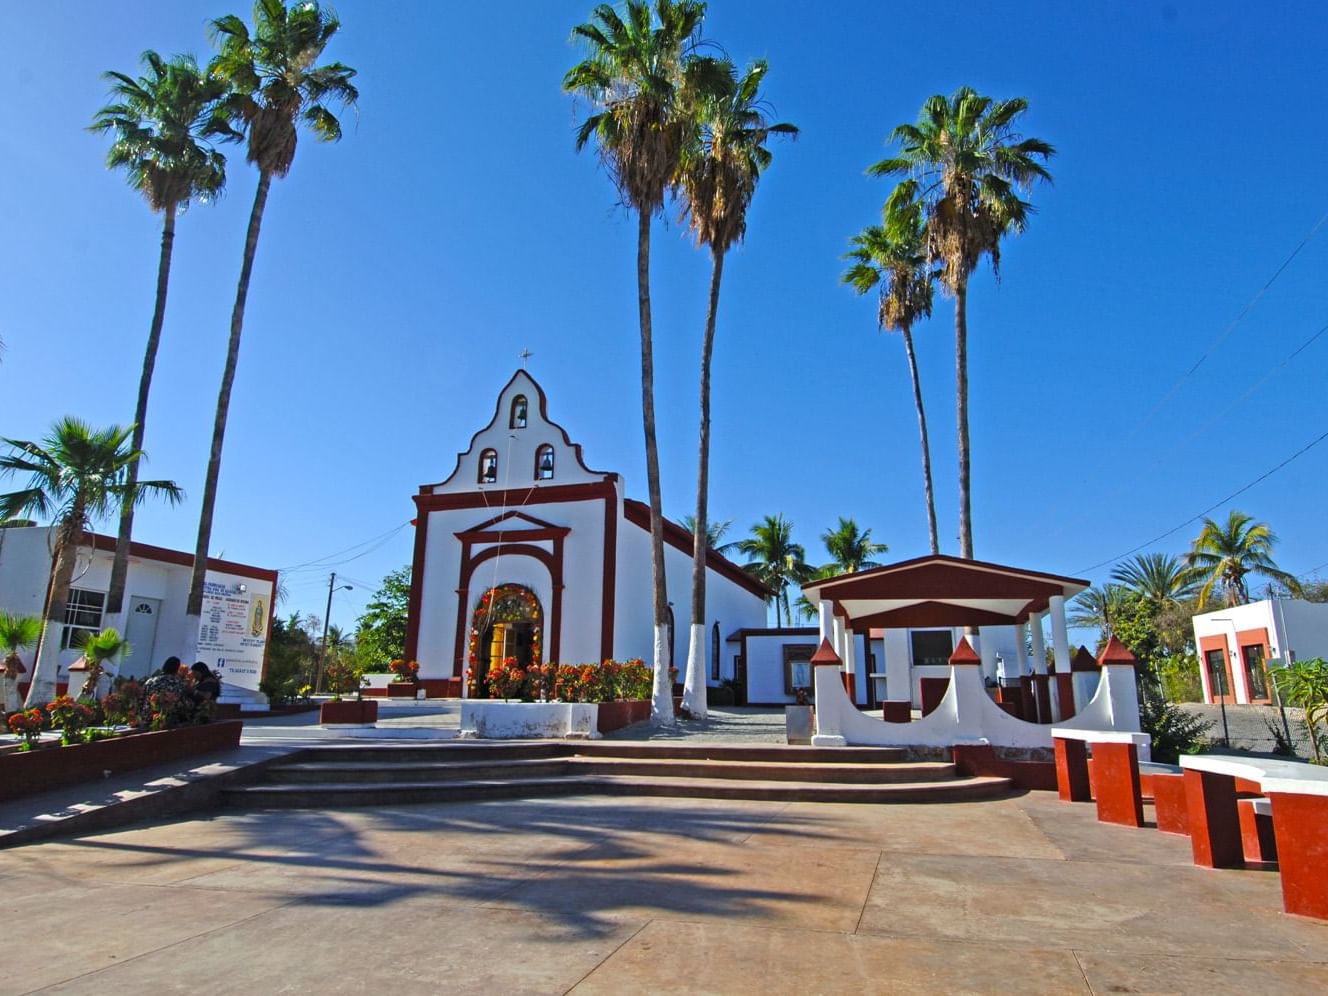 Exterior of Miraflores church near Hotel Aeropuerto los Cabos